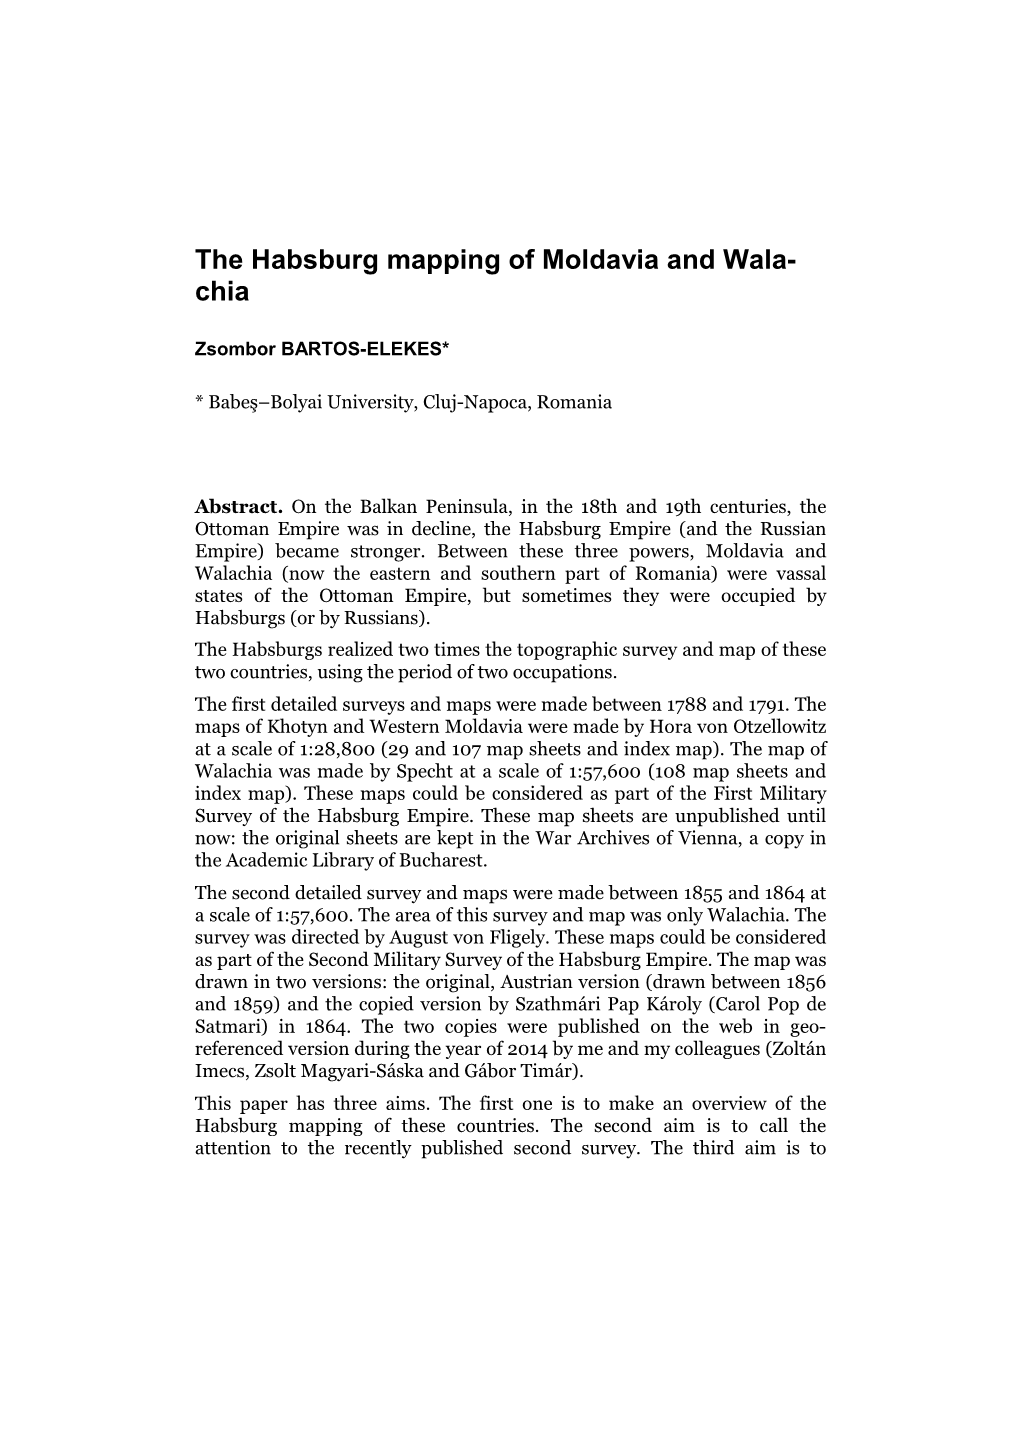 The Habsburg Mapping of Moldavia and Wala- Chia